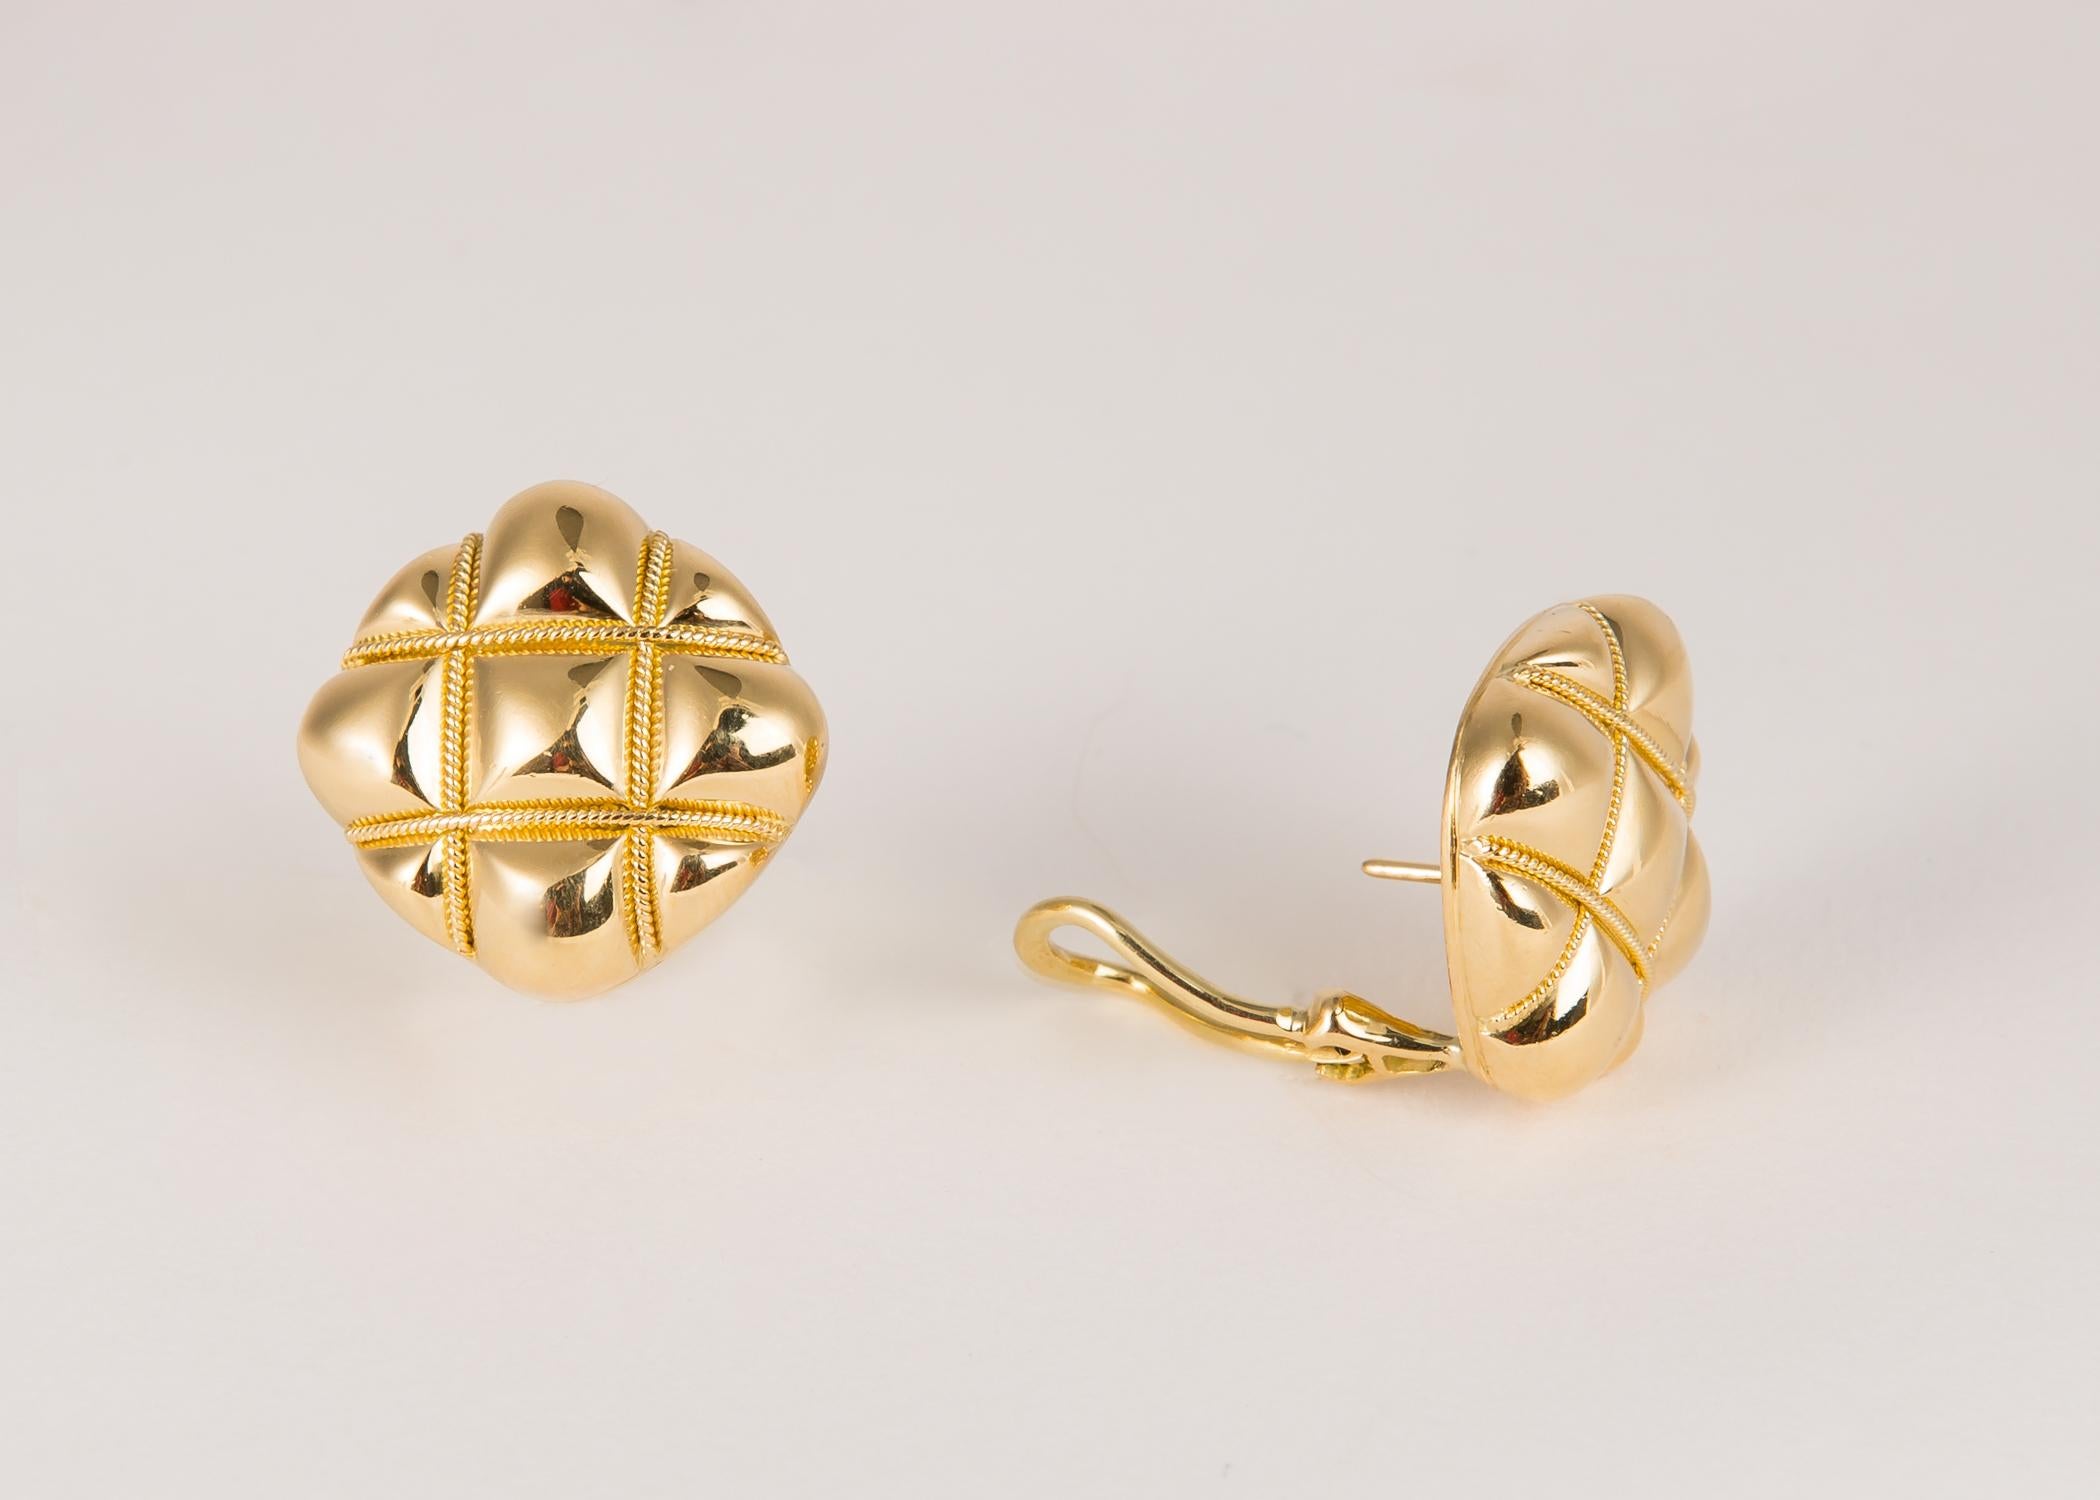 Ein klassisches, zeitloses Design von Tiffany & Co. Reichhaltiges 18-karätiges Gold Etwas mehr als ein 3/4 Zoll groß.